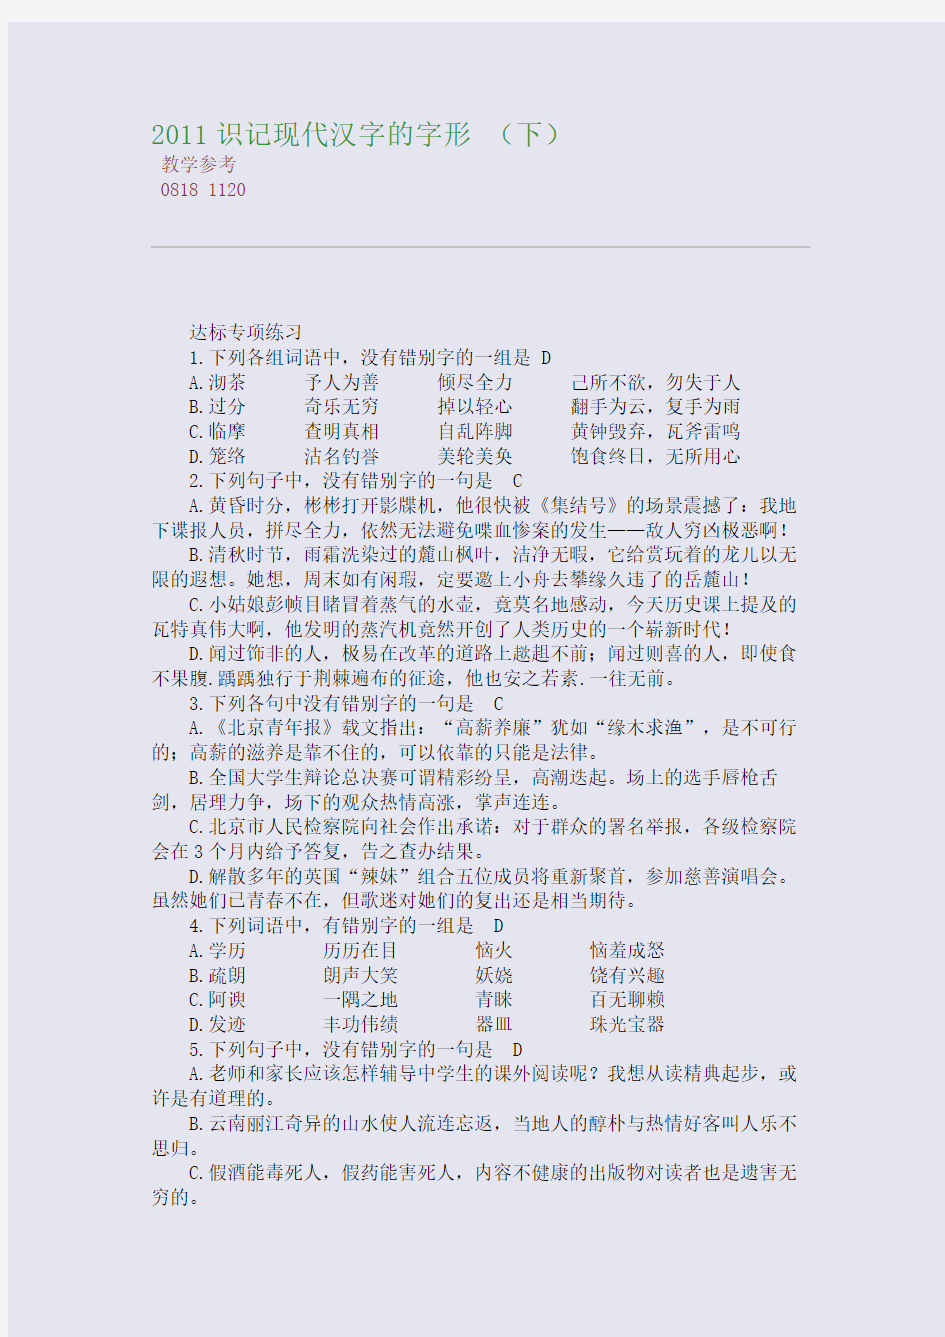 2011识记现代汉字的字形 (下)